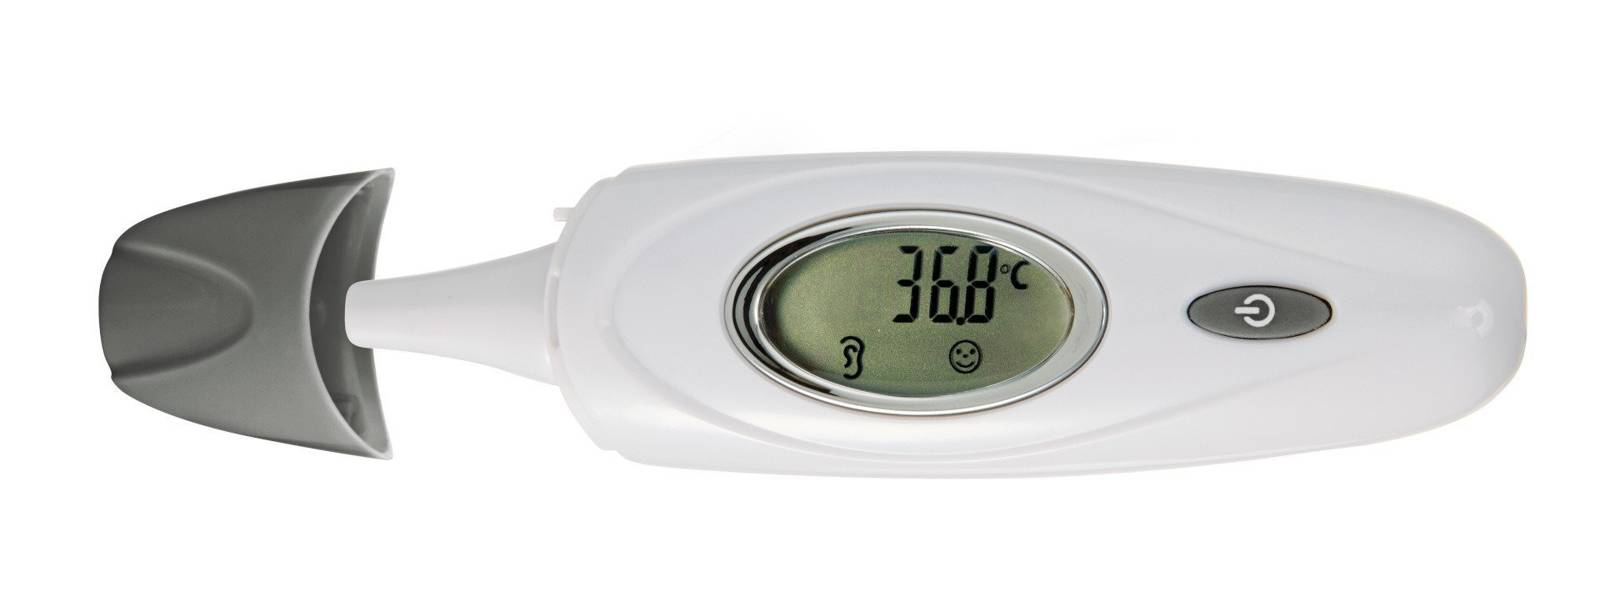 Reer 9633 Cyfrowy termometr do gorączki do smoczka